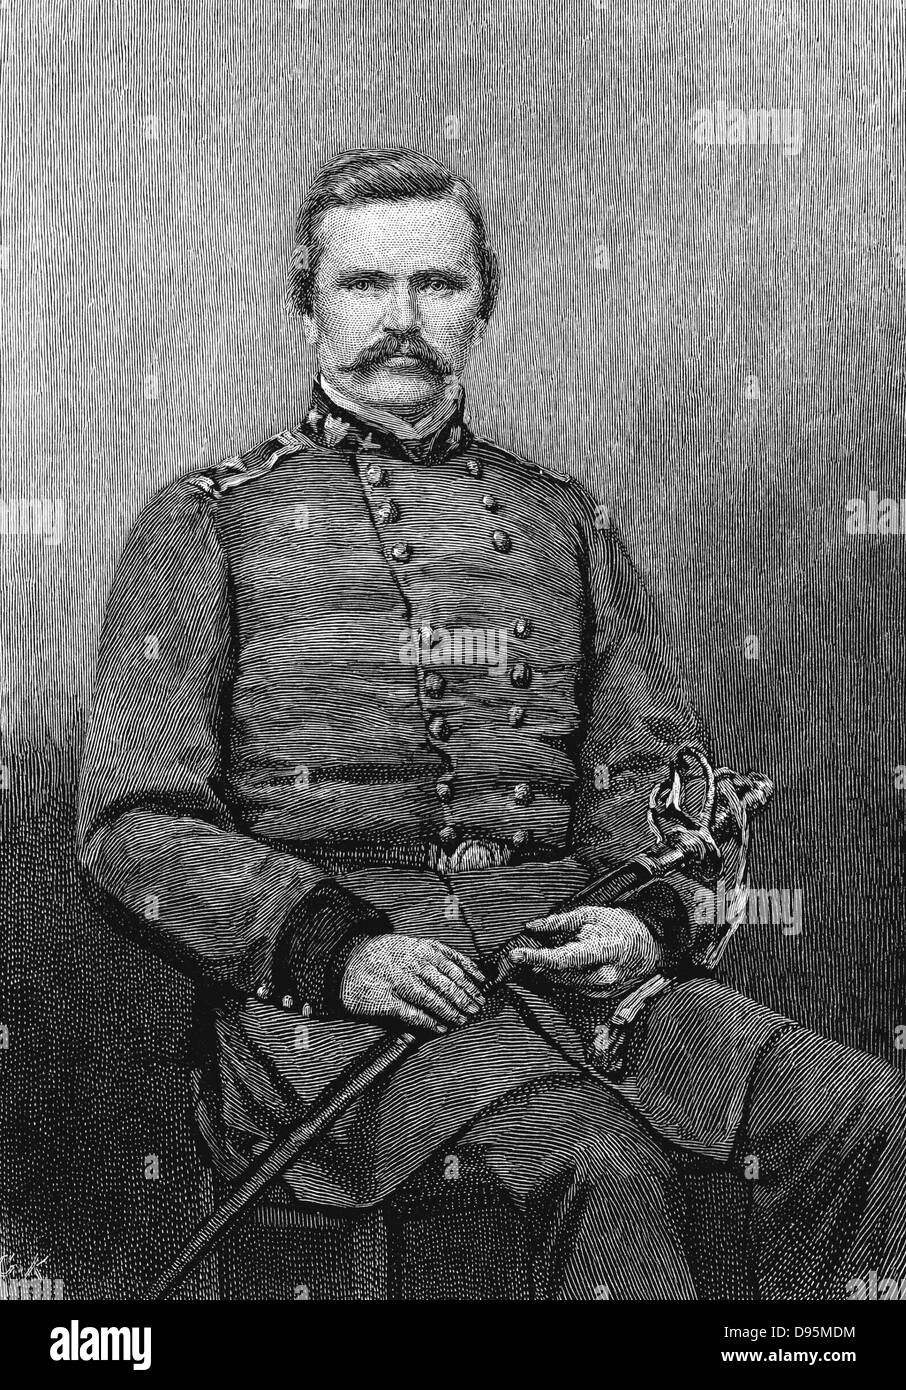 Simon Bolivar Buckner (1823-1914) in generale confederato (sud) esercito nella guerra civile americana 1861-1865. Governatore del Kentucky 1887-1891. Incisione. Foto Stock